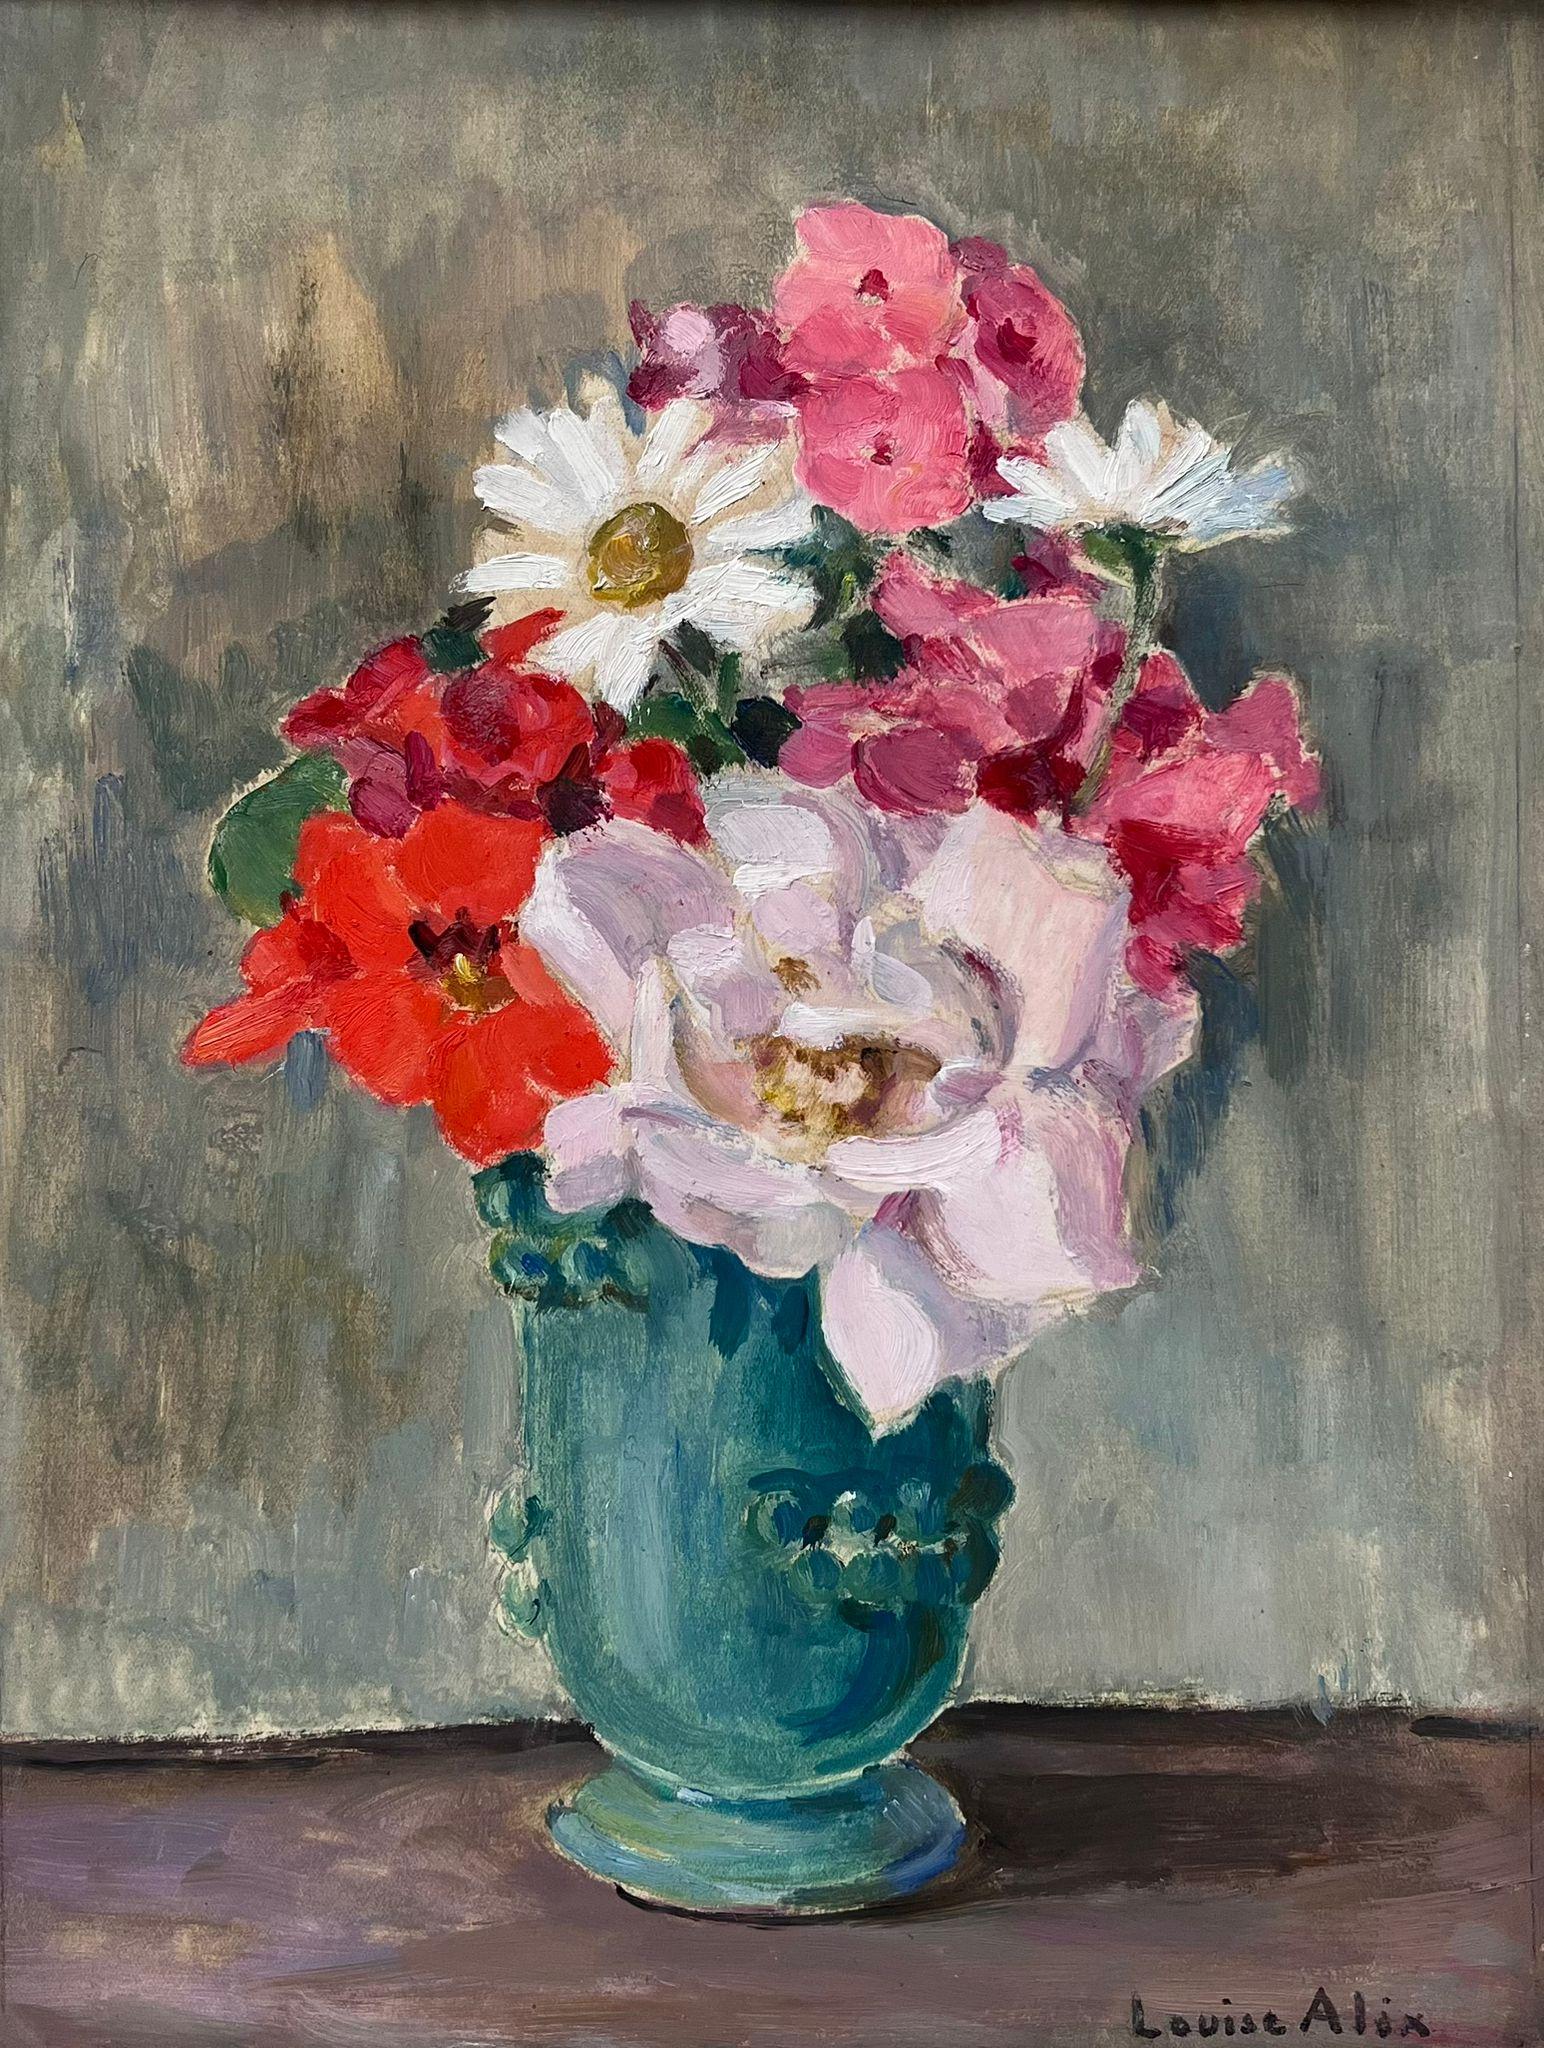 Französische impressionistische Ölblumenvase im Vintage-Stil des Impressionismus in Teal, signiert Original – Painting von Louise Alix